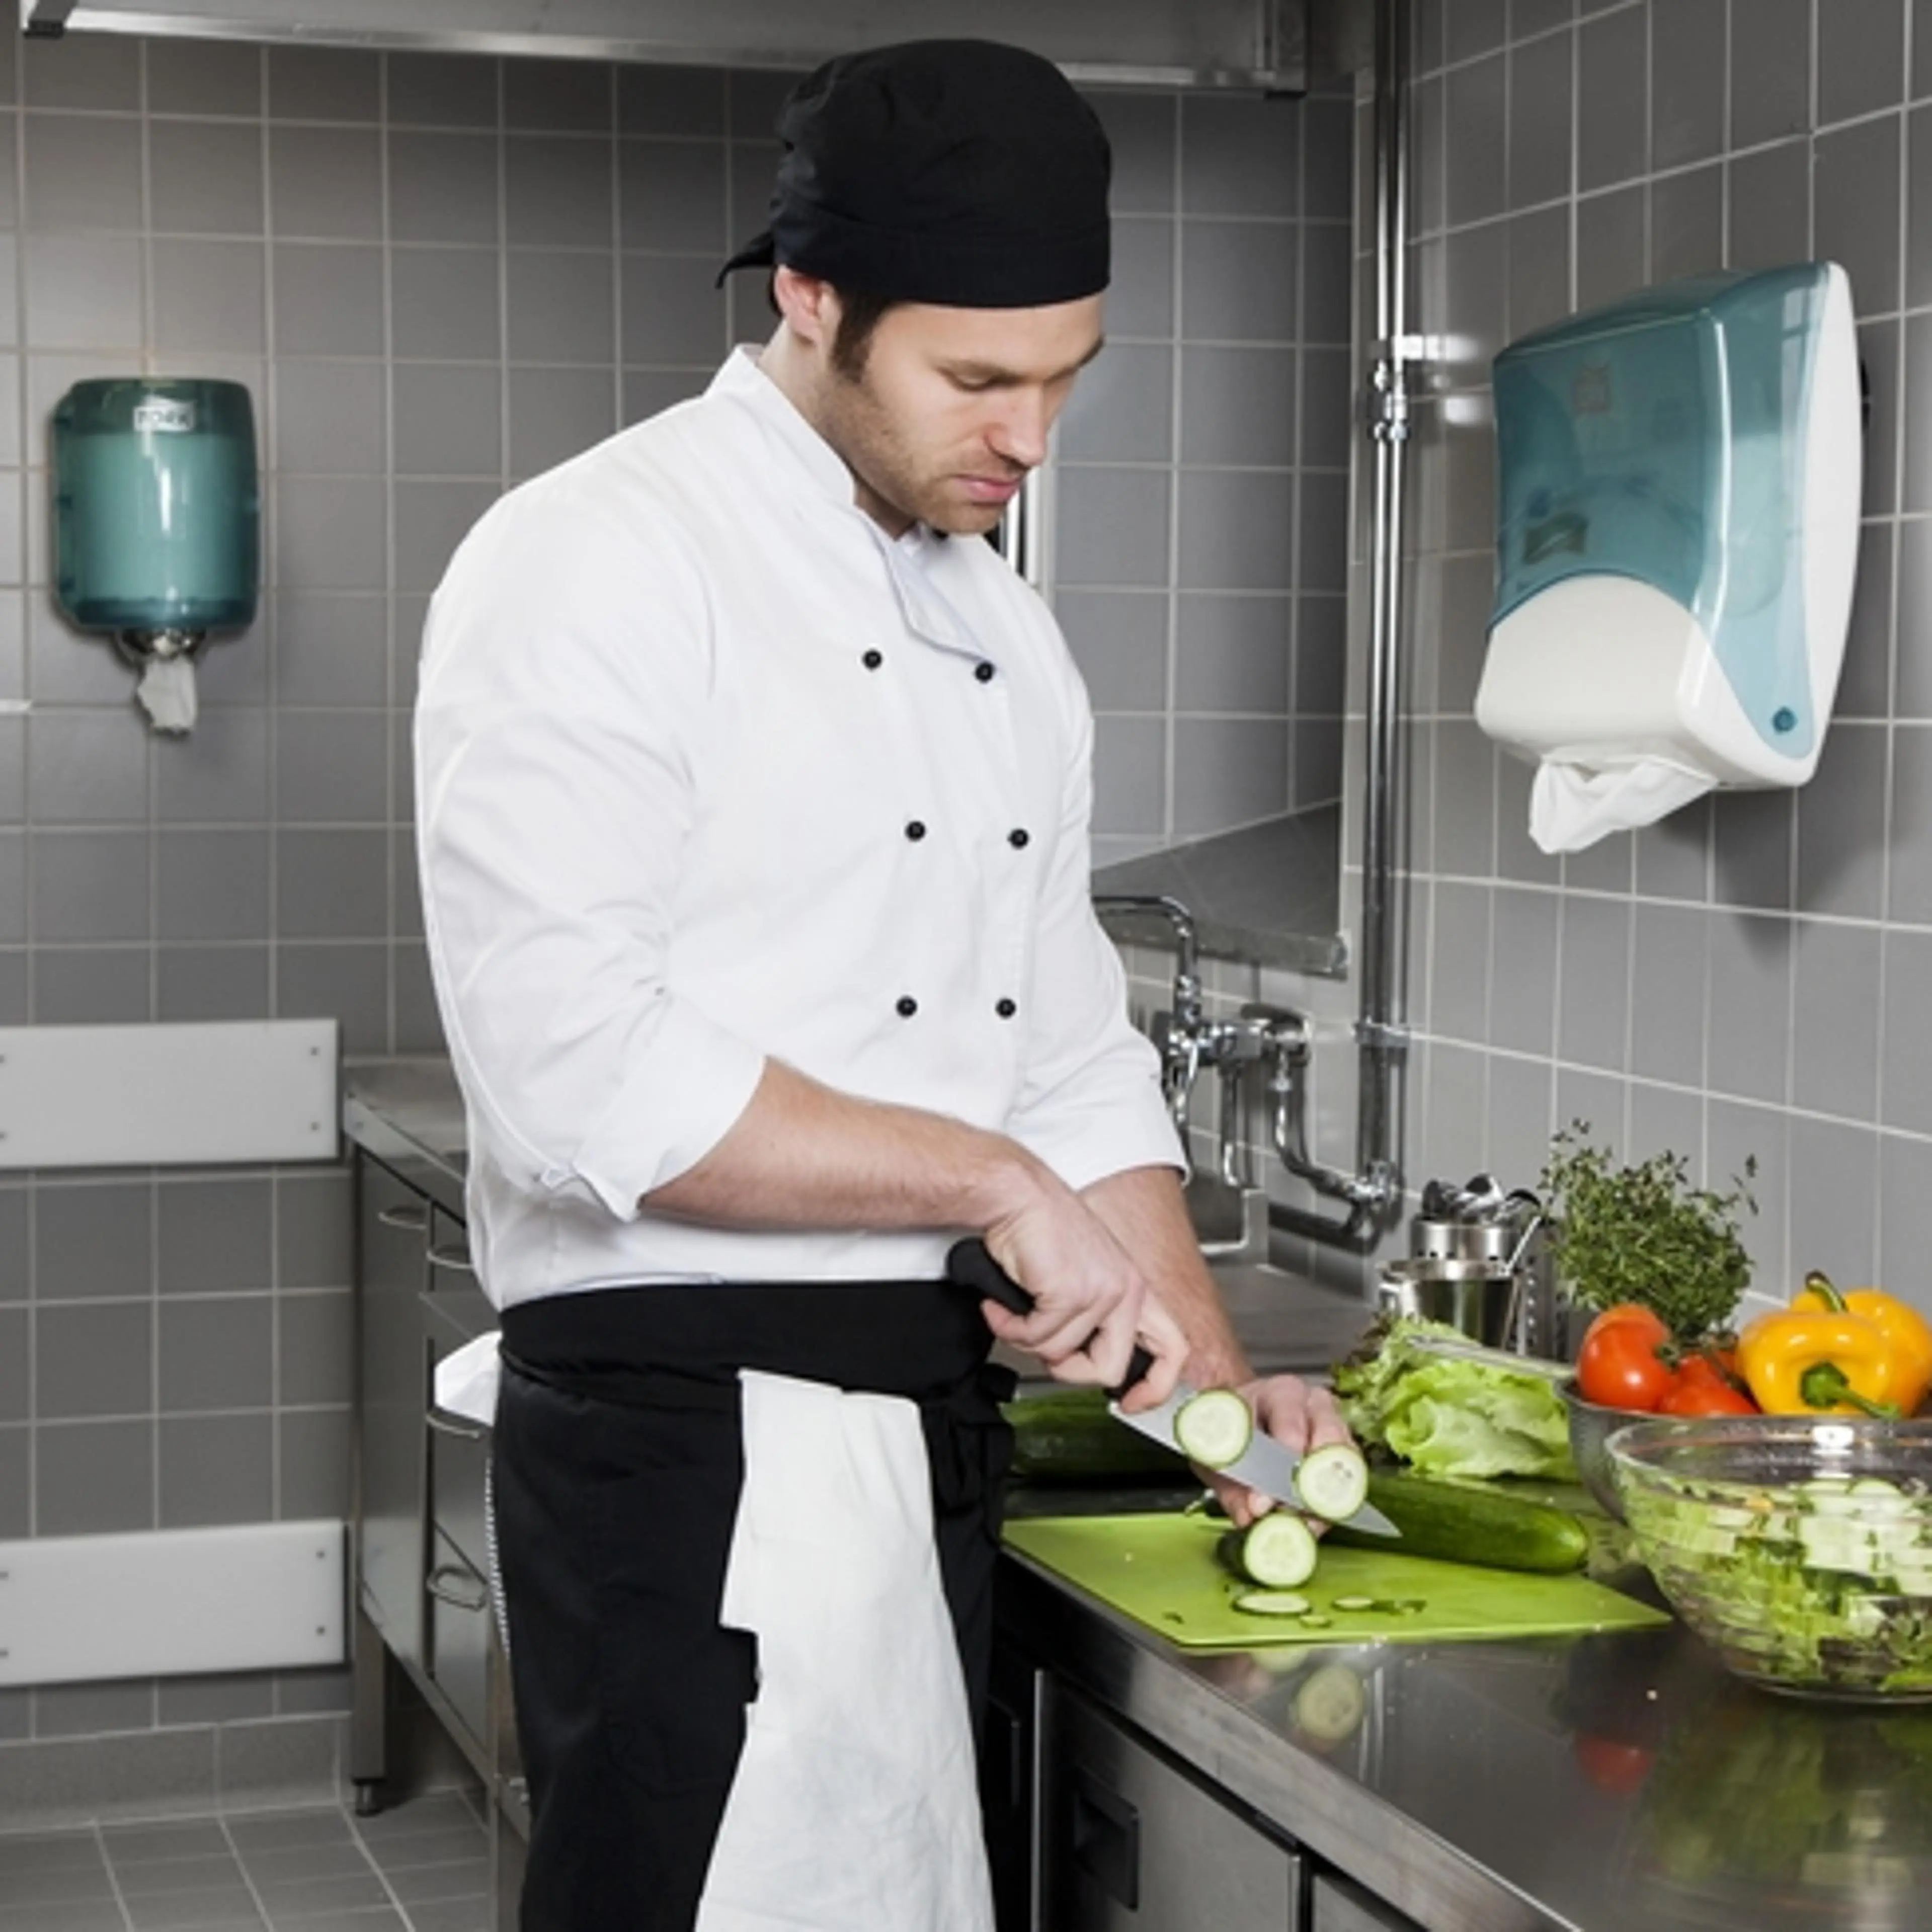 Kokk skjærer grønnsaker på kjøkkenbenk